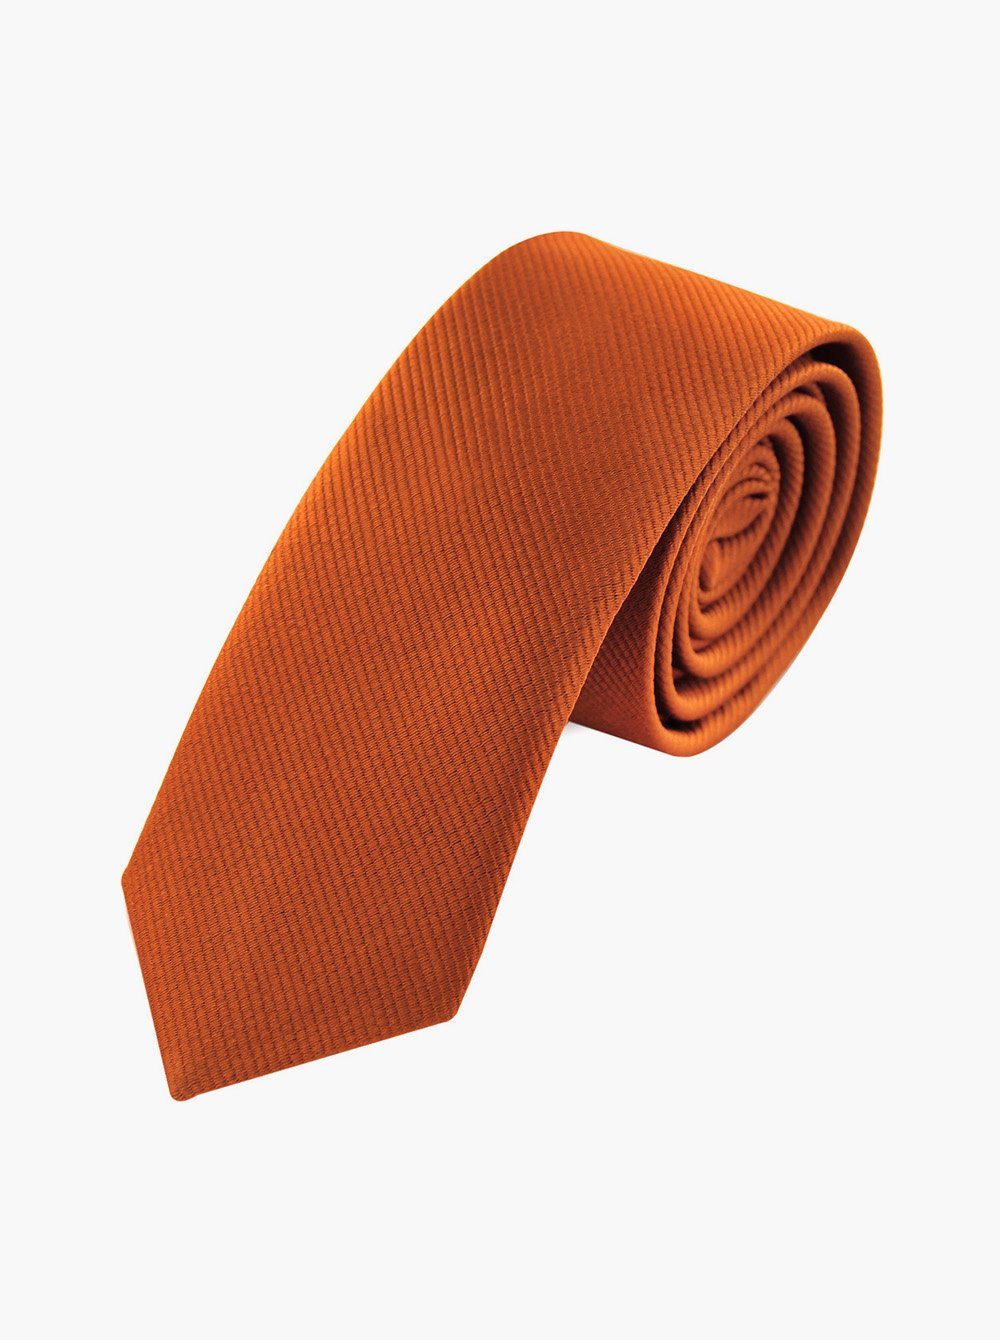 axy Krawatte Herren Krawatte 5.0 cm breit einfarbig perfektes Geschenk Seidenkrawatte, mit Geschenkbox Apricot